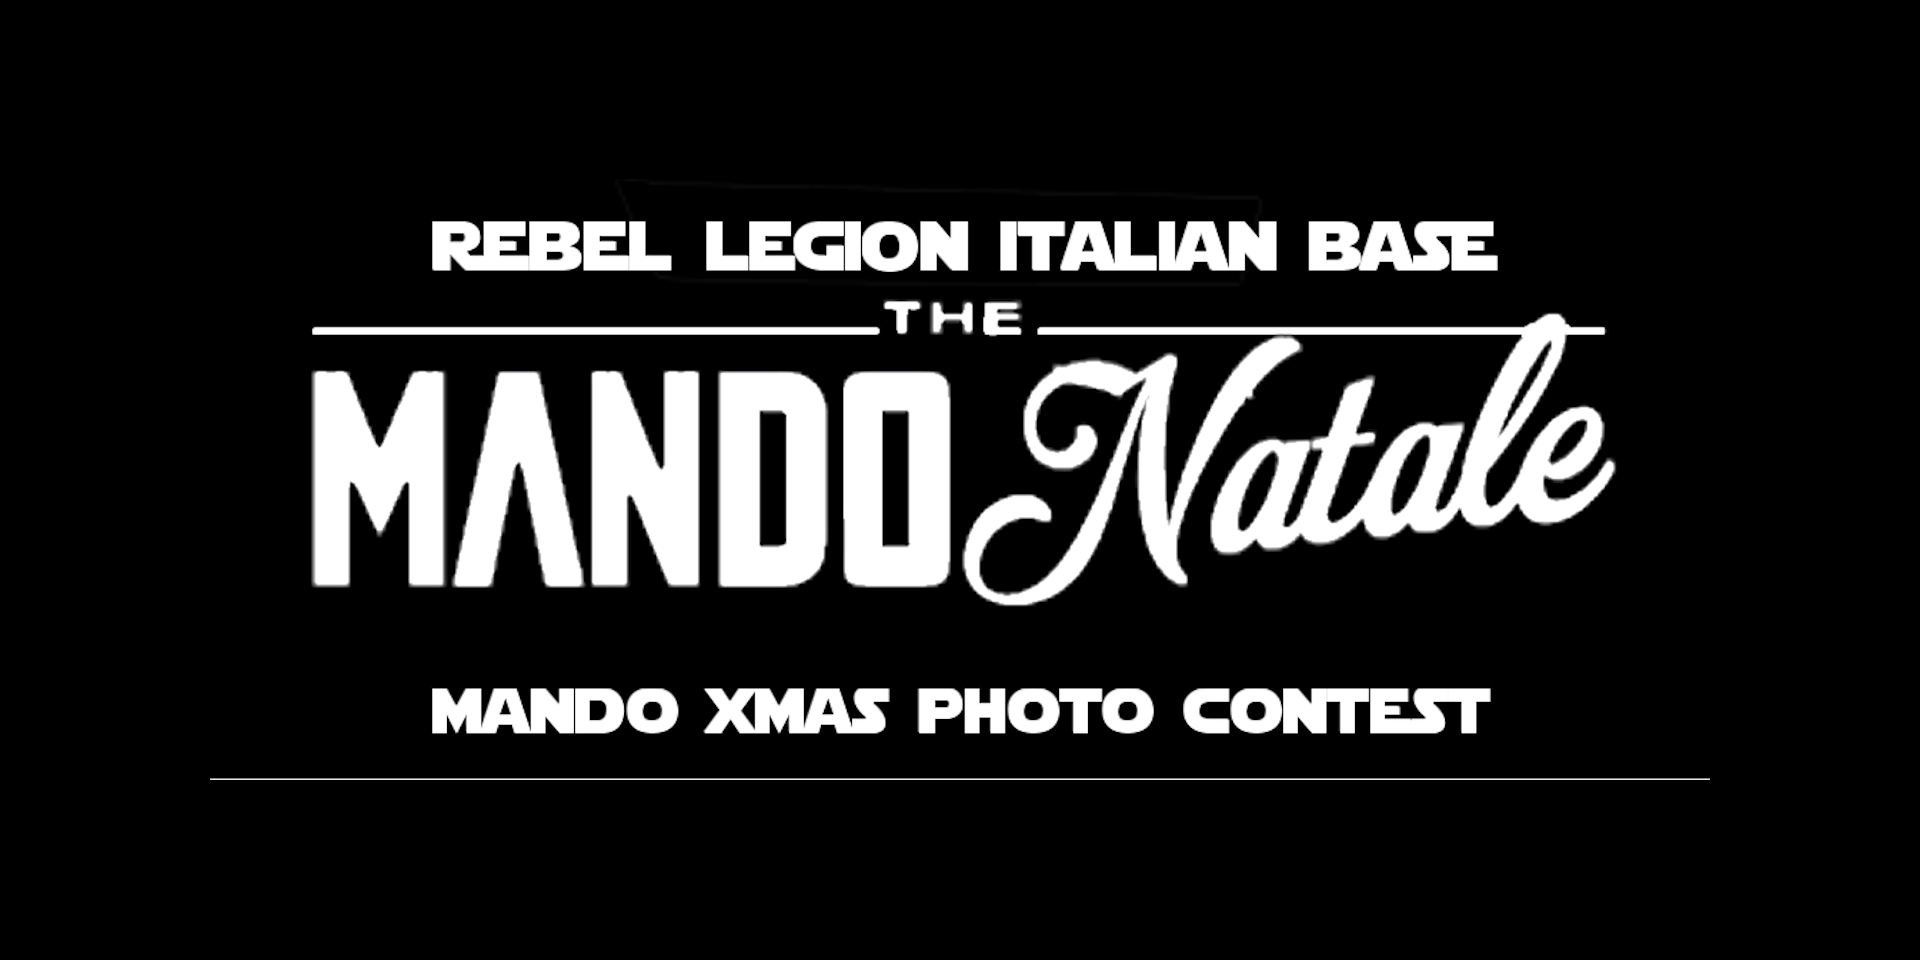 Mandonatale – Mando Xmas Photo Contest